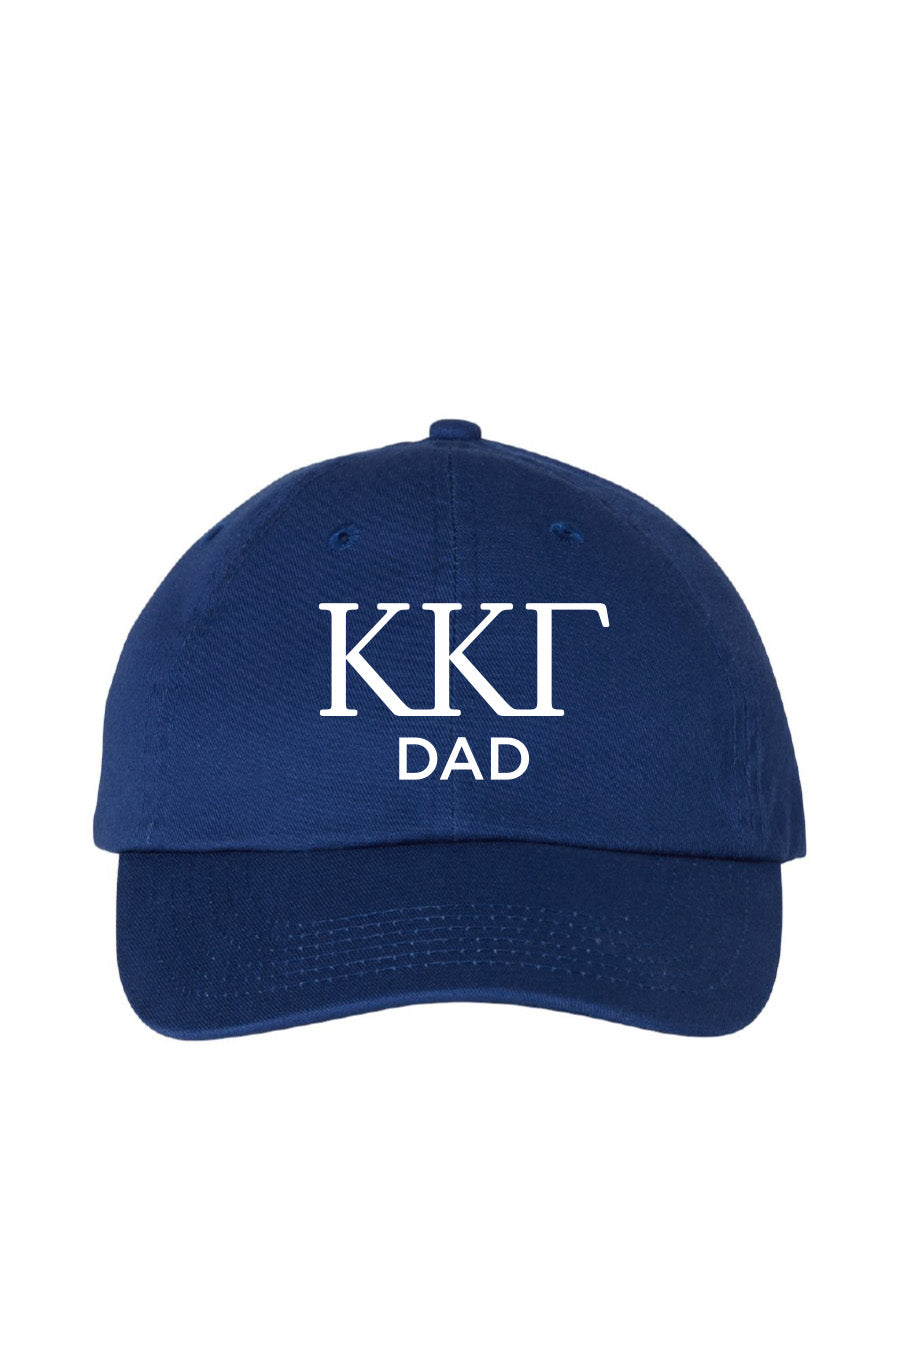 KKG Dad Hat